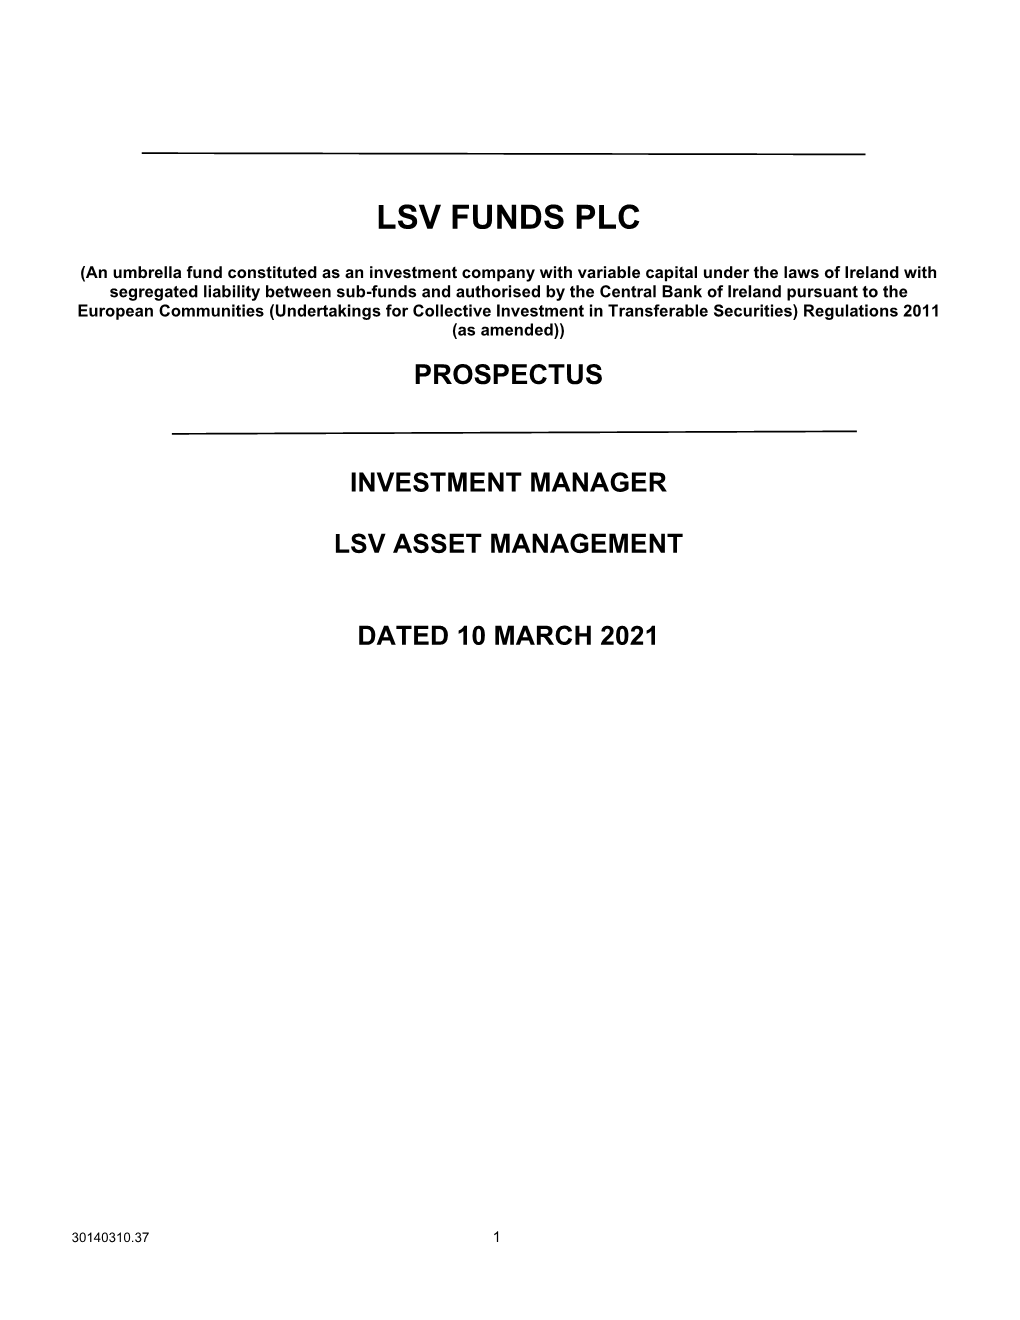 LSV Funds PLC Prospectus